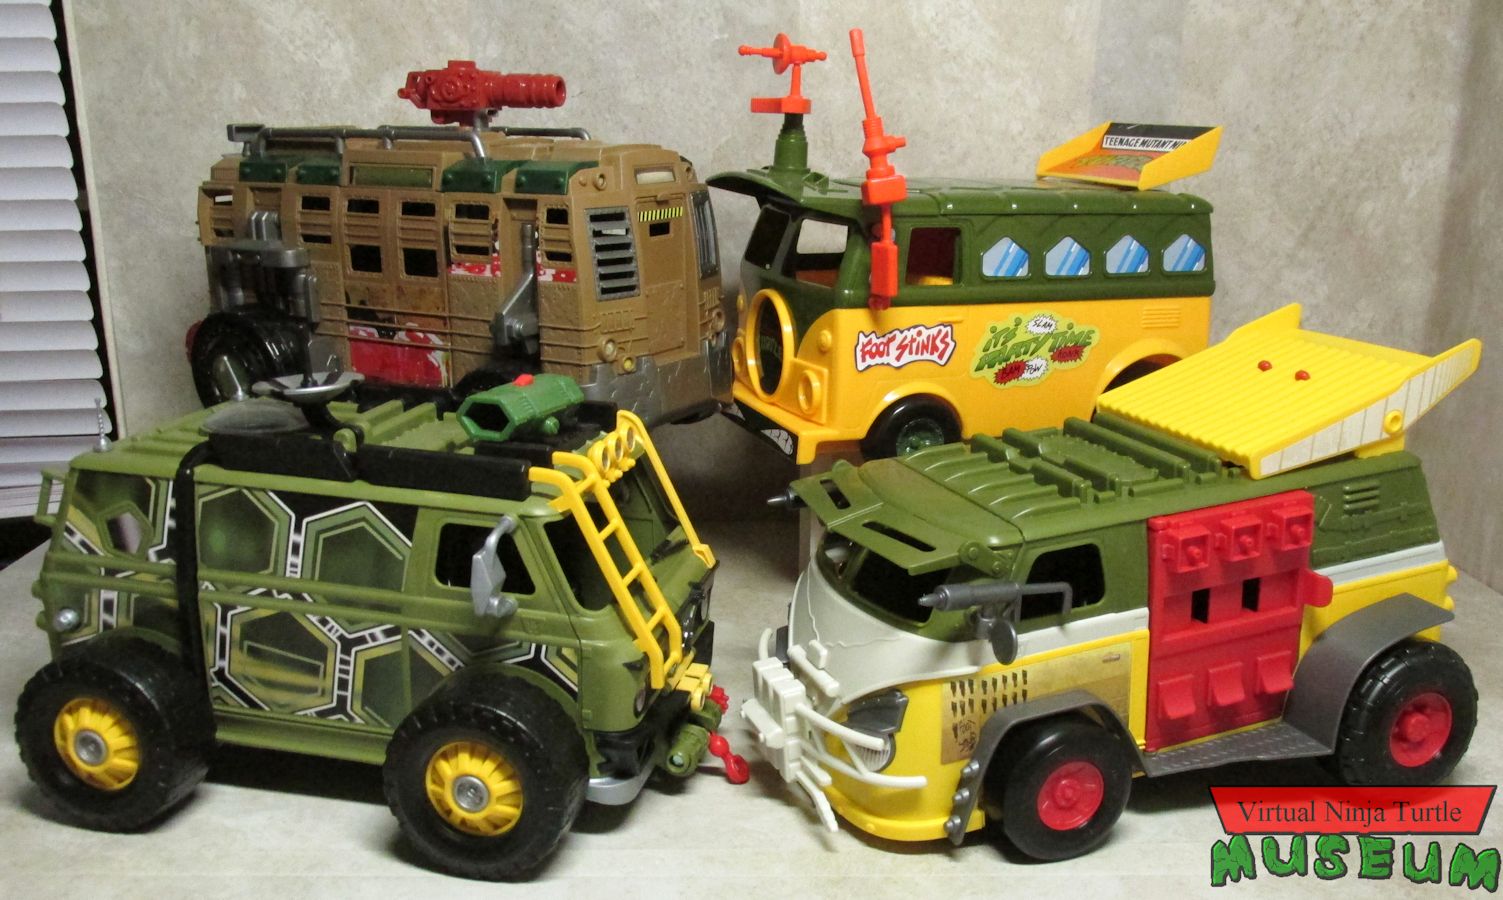 Party Wagon, Assault Van, Shellraiser and Turtle Van